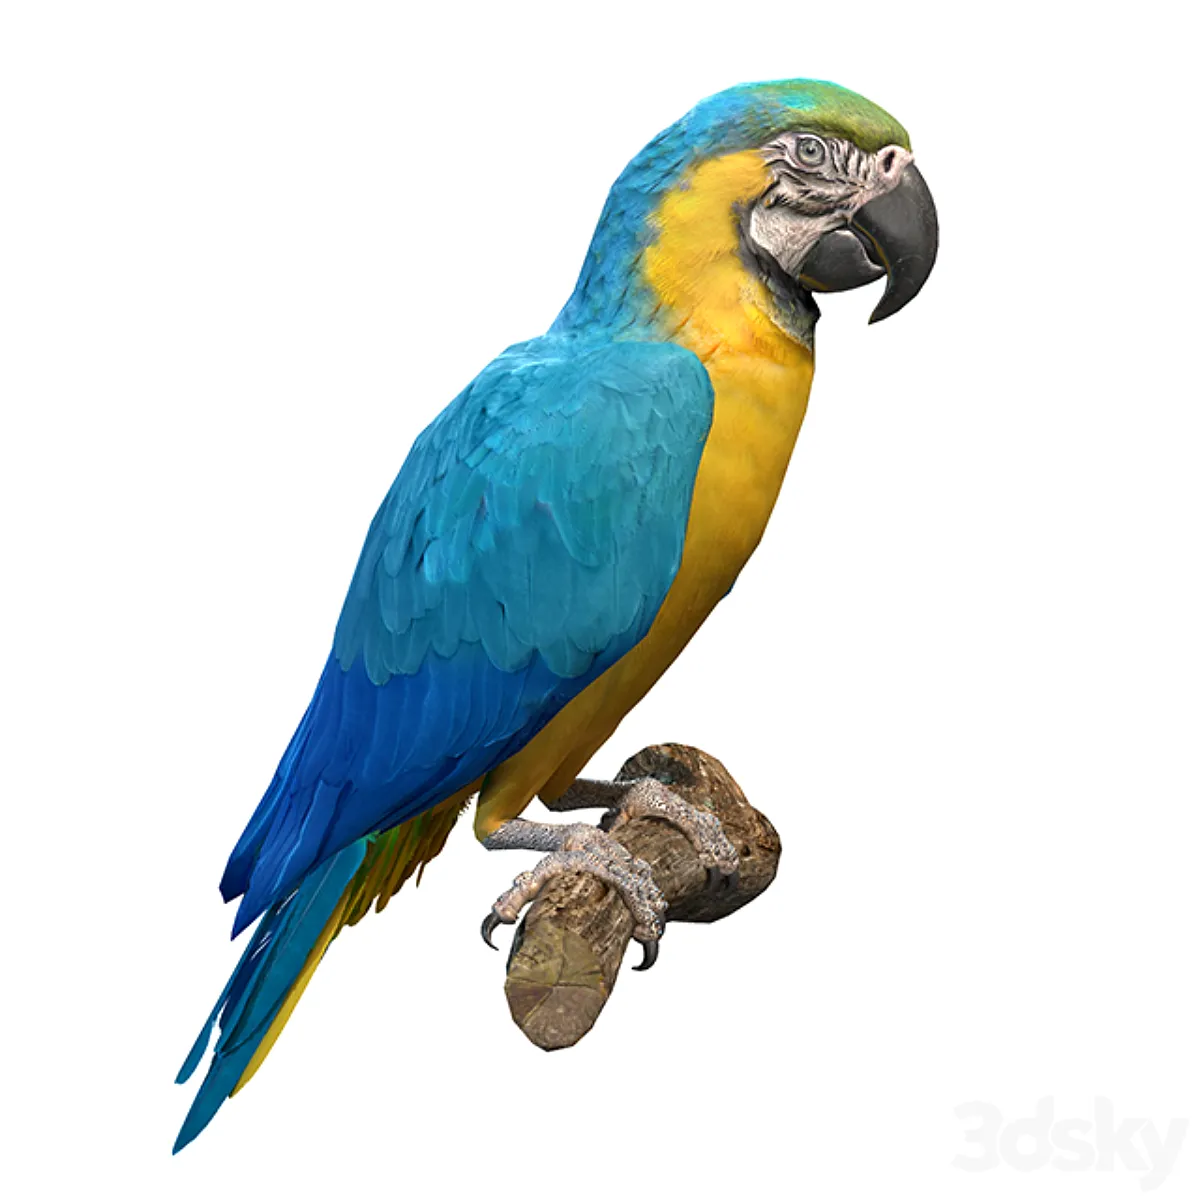 مدل سه بعدی طوطی تری دی مکس + ویری Blue and Gold Macaw Parrot